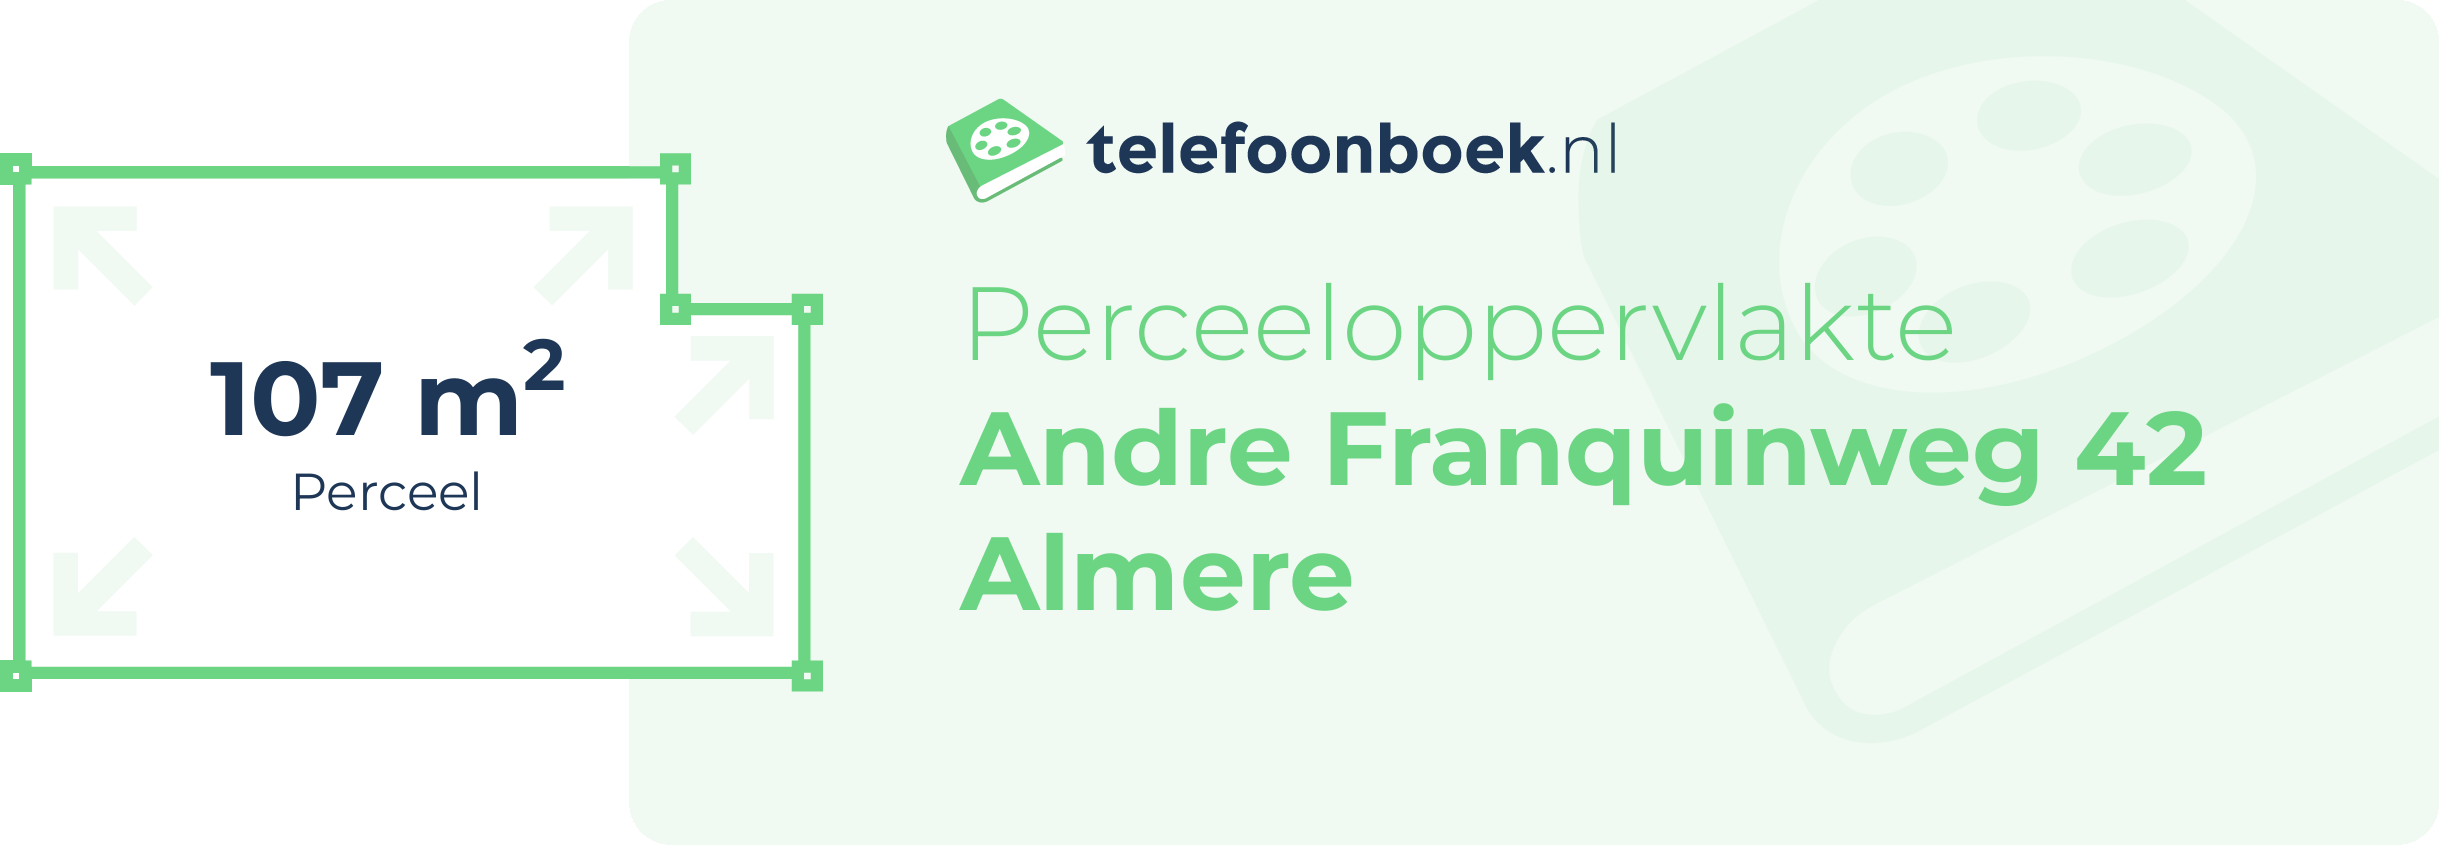 Perceeloppervlakte Andre Franquinweg 42 Almere